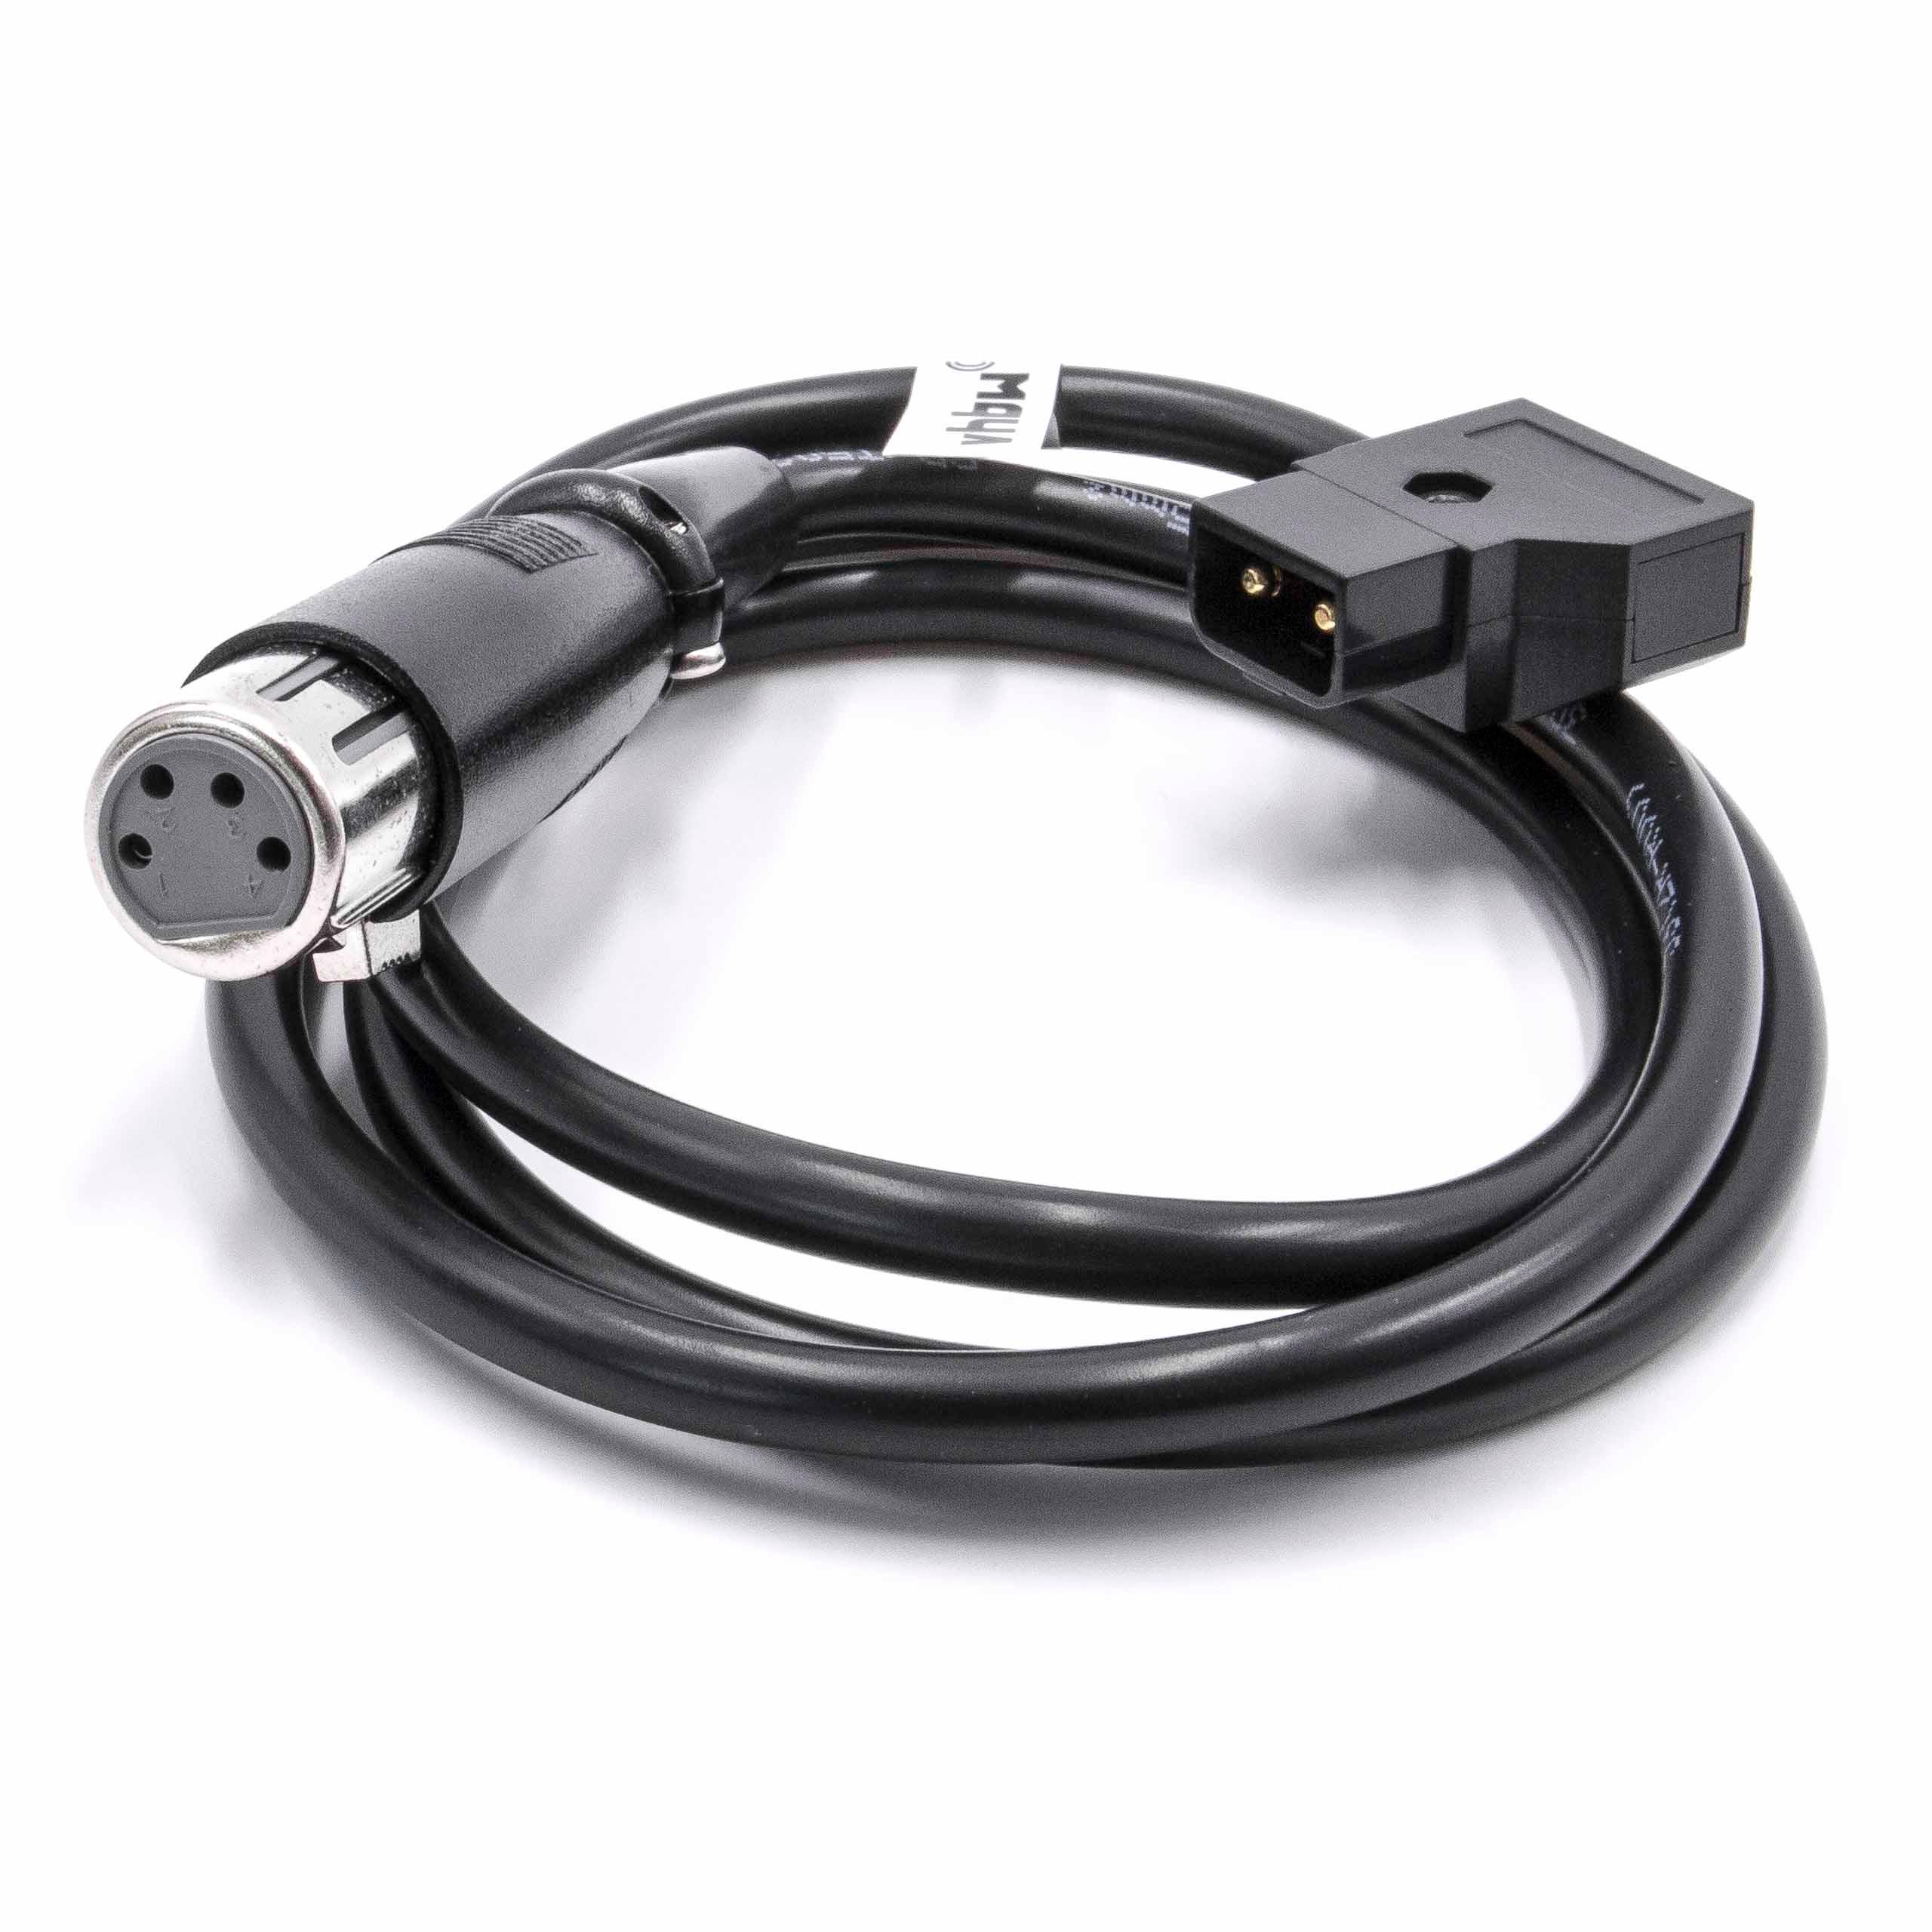 Câble adaptateur D-Tap (mâle) vers XLR 4 broches pour appareil photo Anton Bauer D-Tap, Dionic - 1 m noir